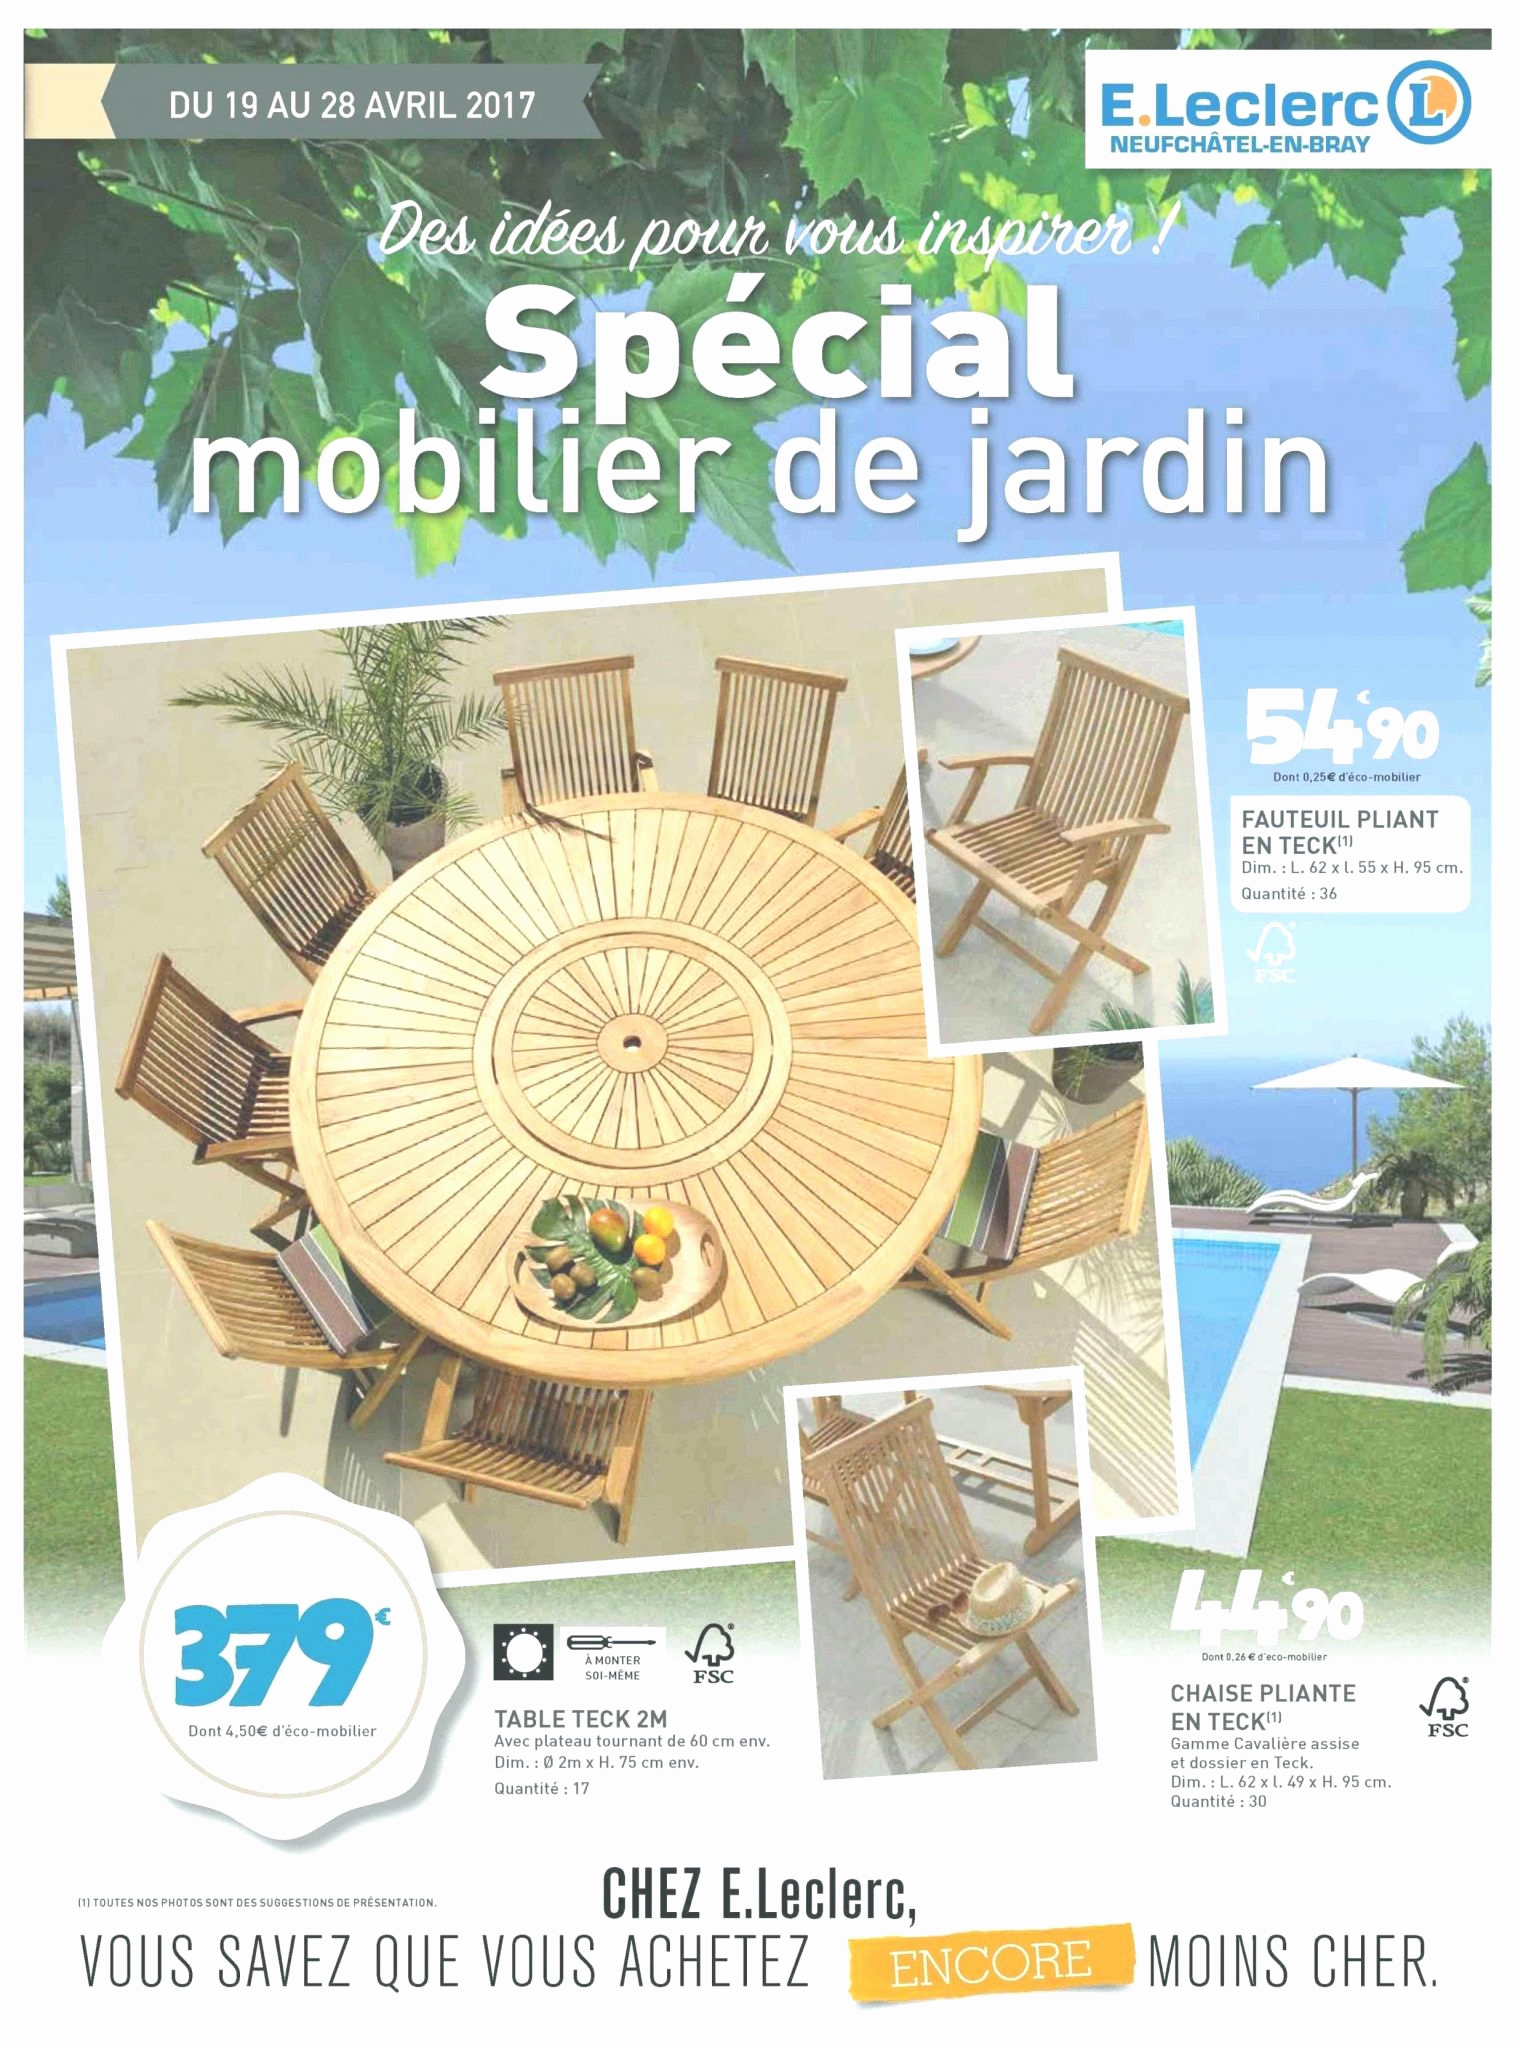 Salon De Jardin En Teck En Promotion Unique Salon De Jardin Leclerc Catalogue 2017 Le Meilleur De Table